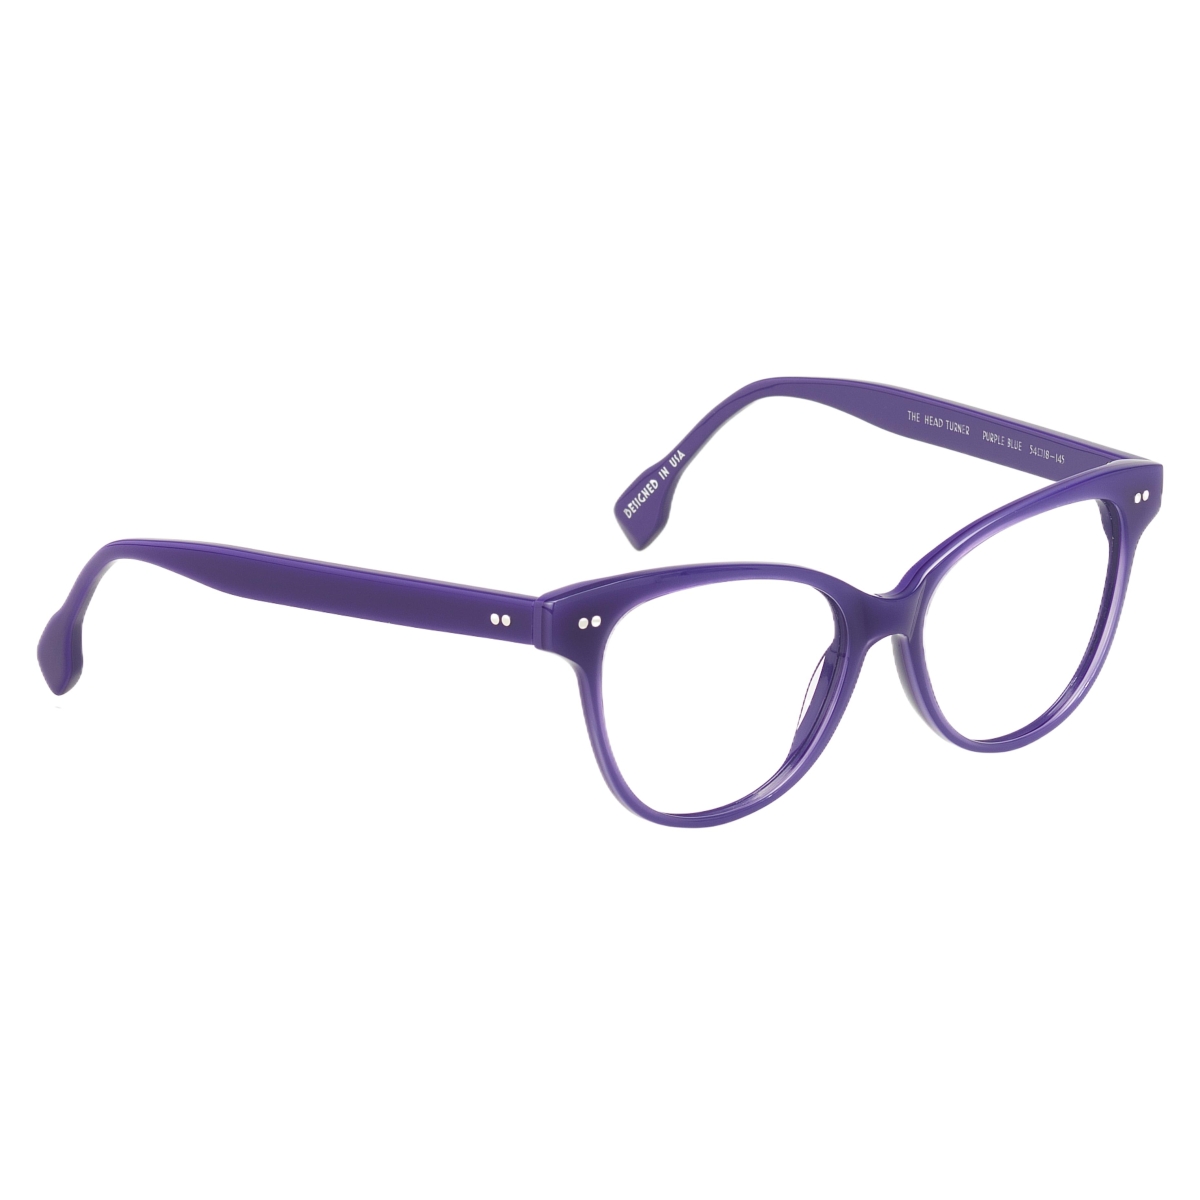 Sugar Specs - The Head Turner 04 Purple Blue